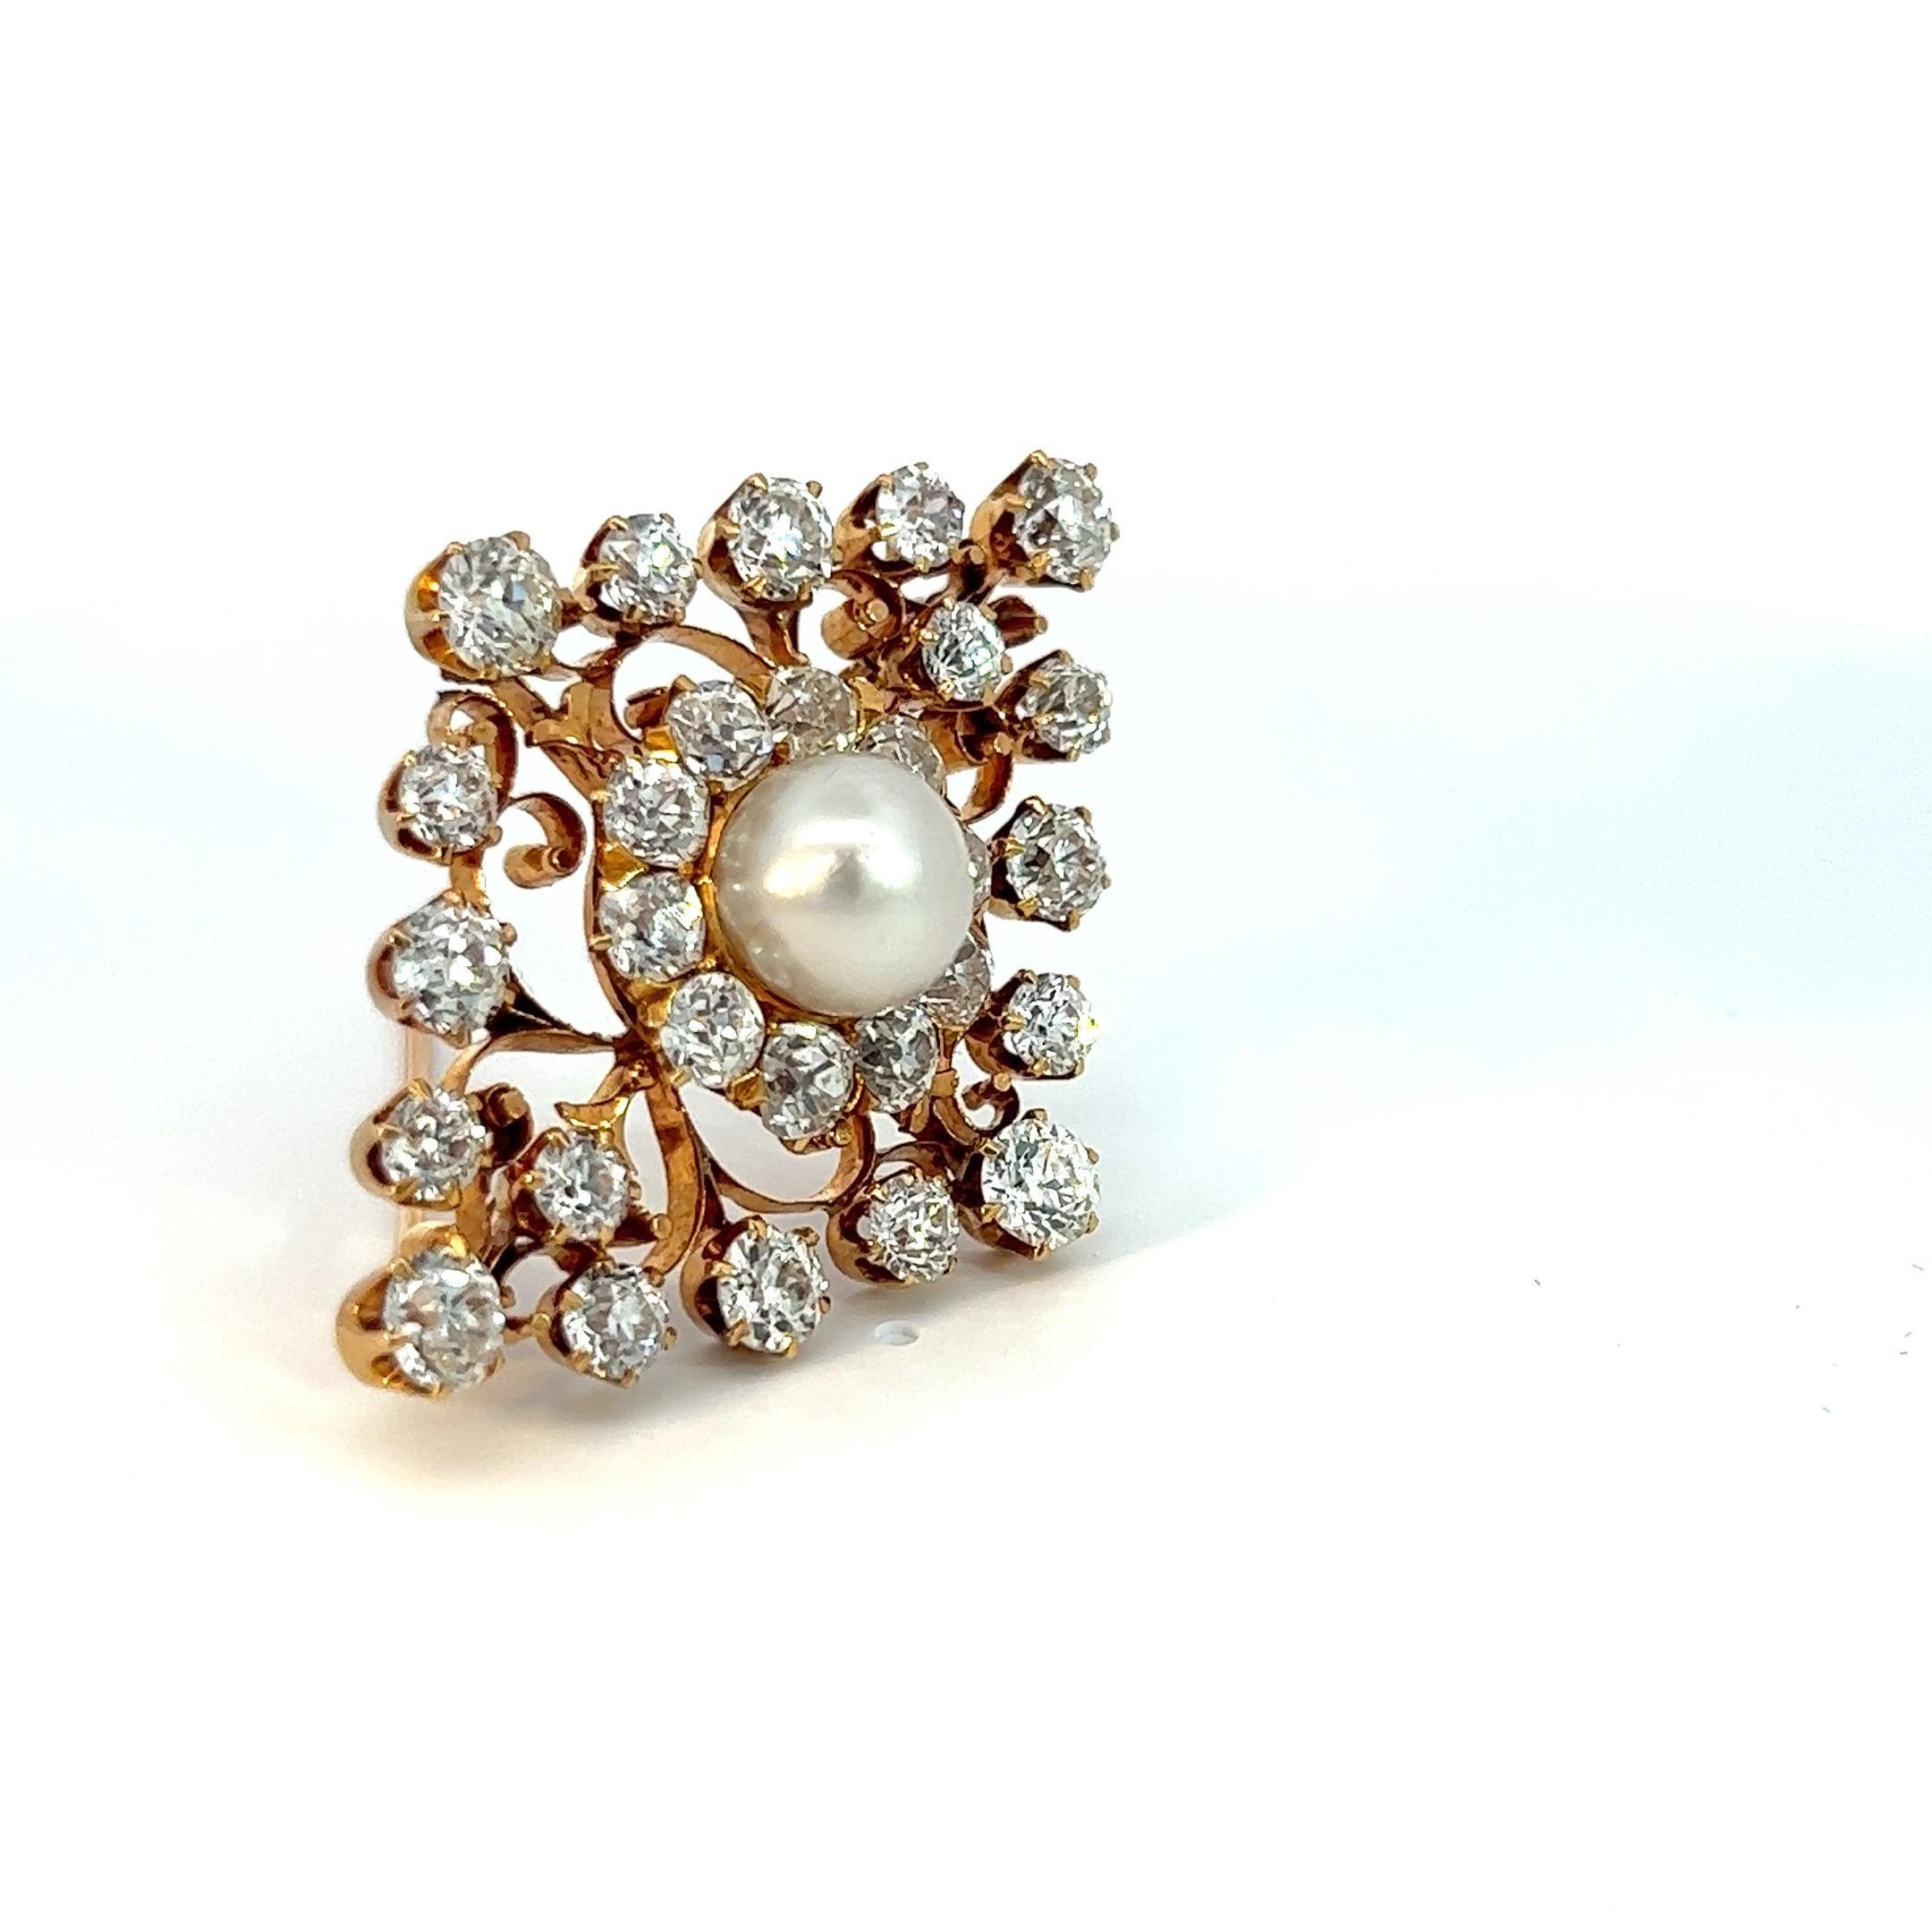 Rehaussez votre style avec notre épingle en perles naturelles et diamants de taille européenne ancienne, véritable incarnation du glamour et de la sophistication vintage. Cet accessoire exquis présente une perle d'eau salée naturelle lumineuse